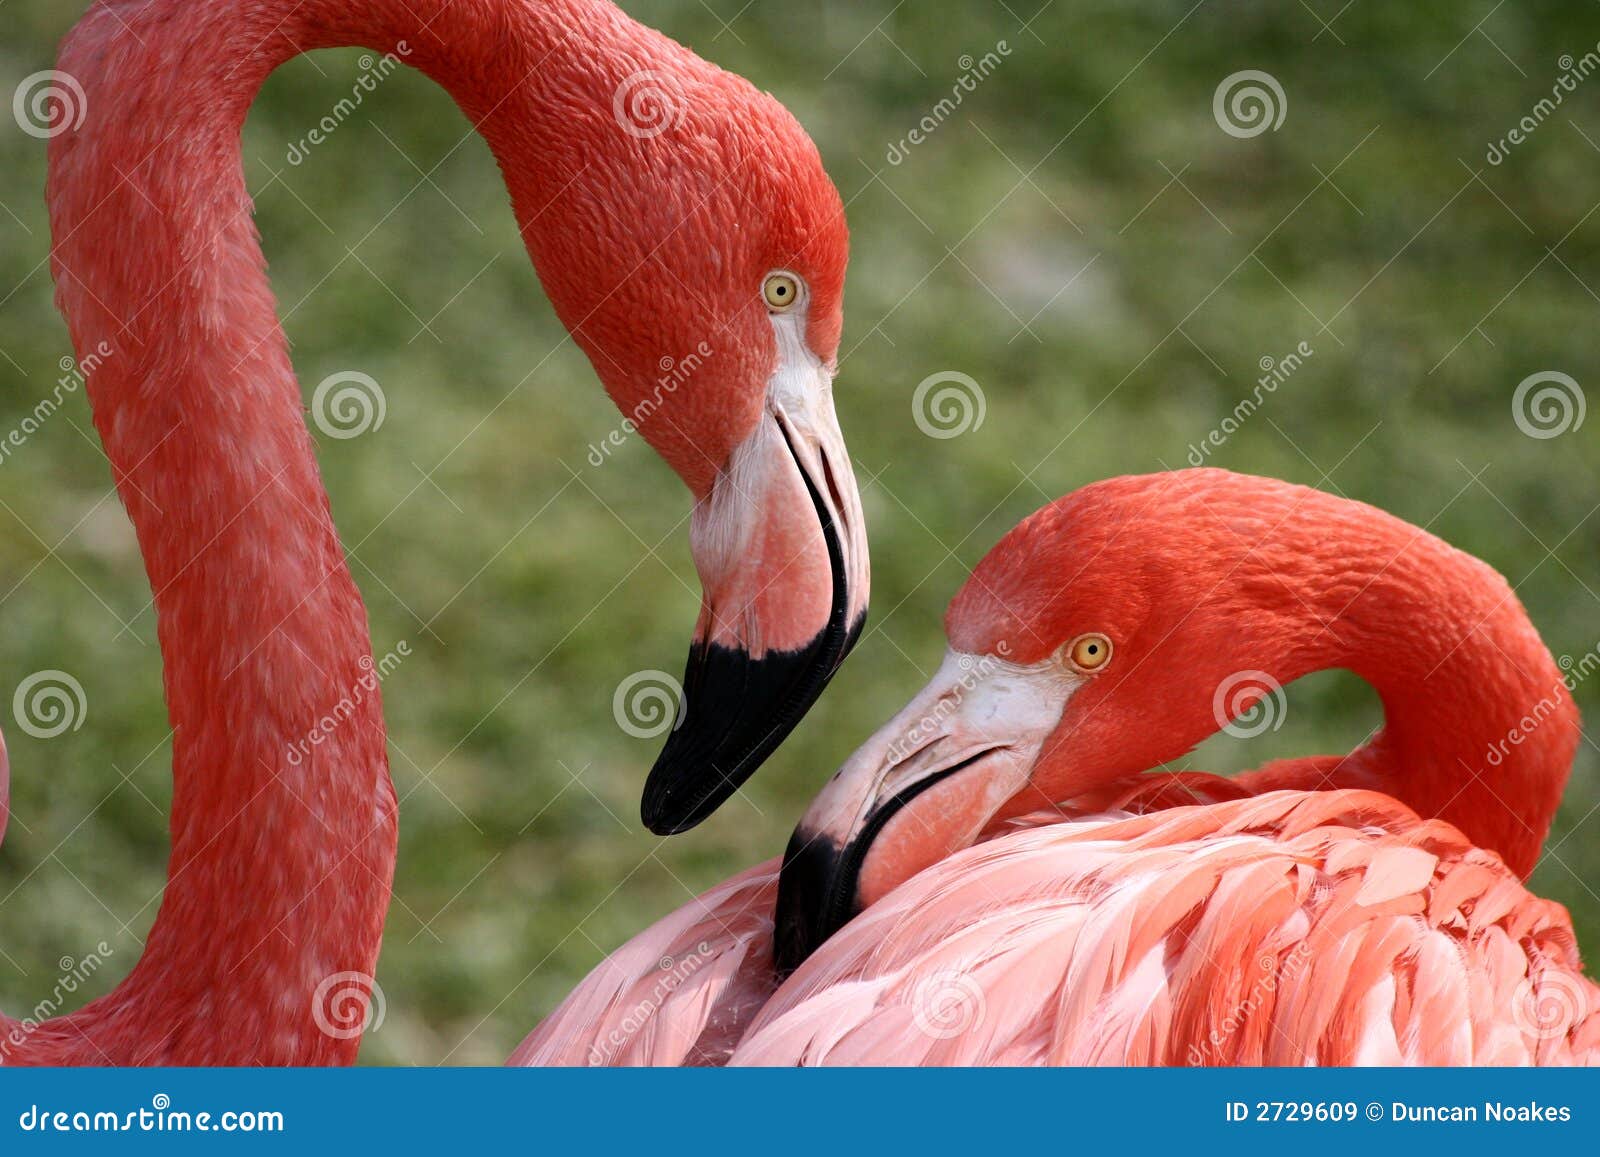 flamingo pair